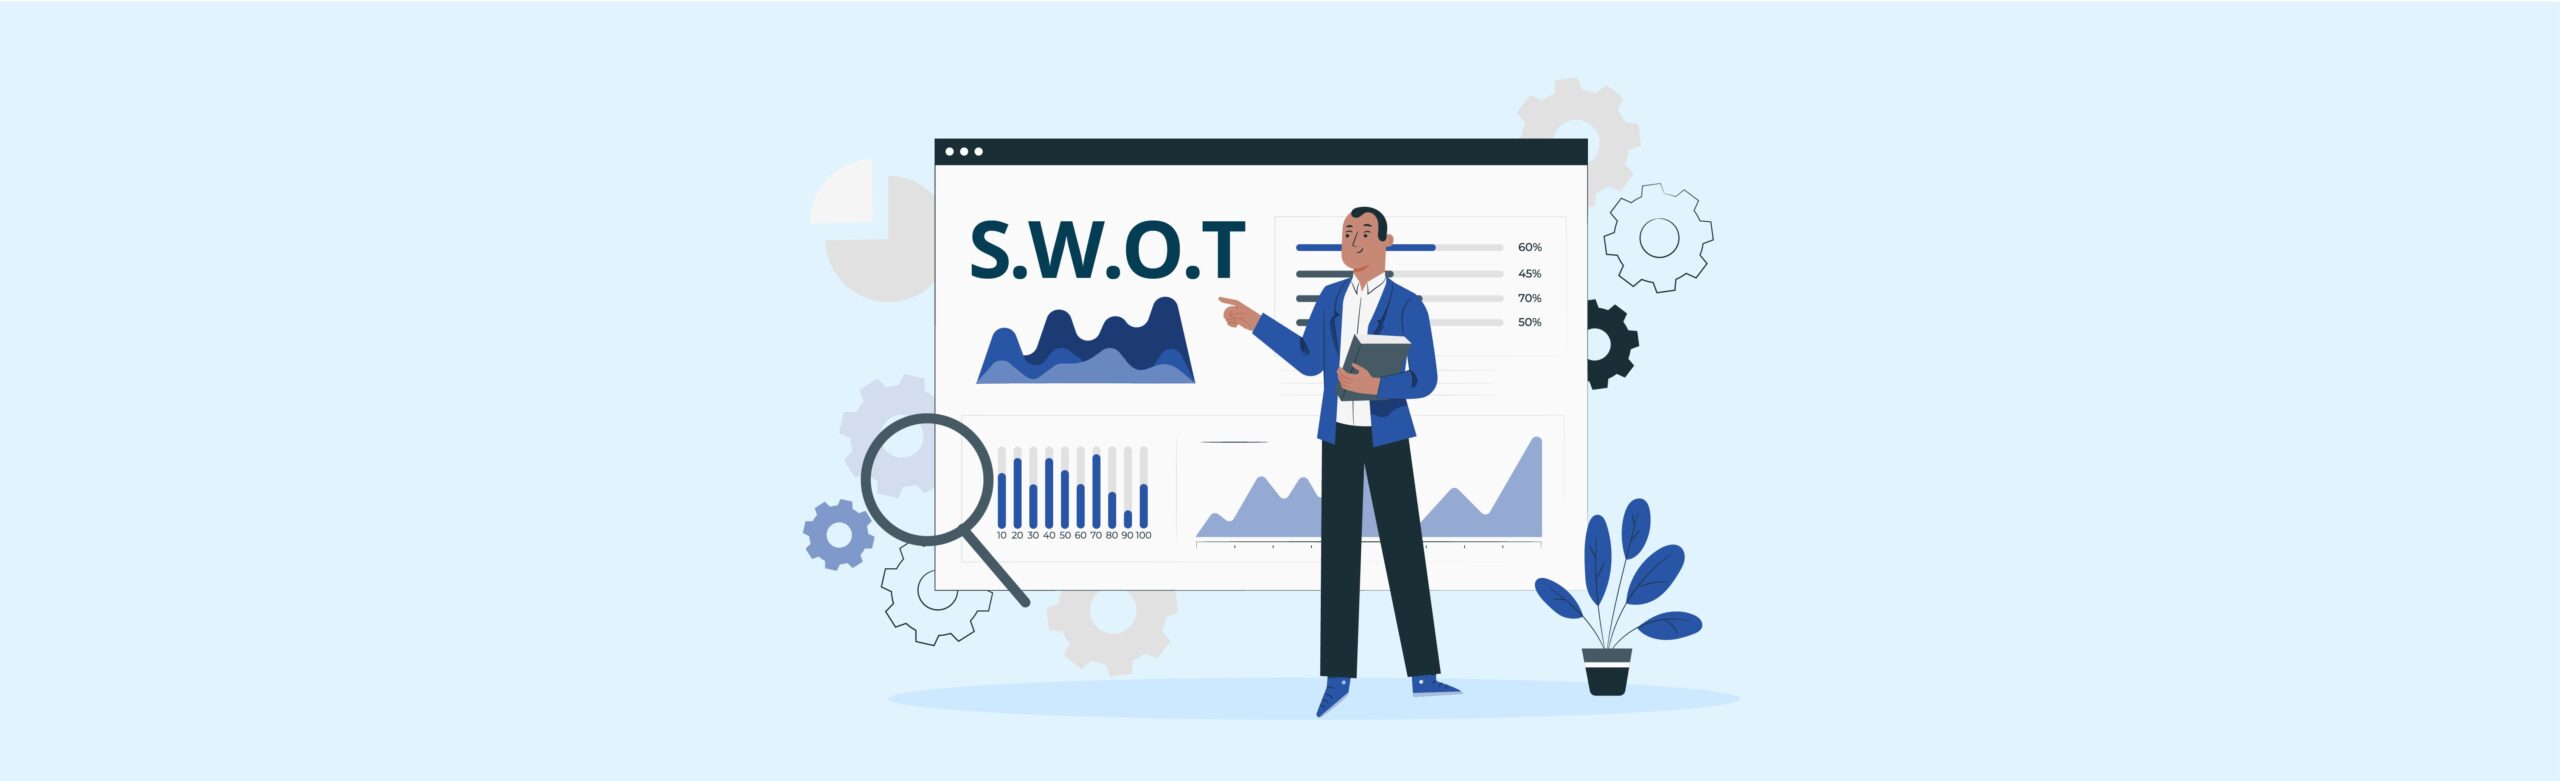 Analisis SWOT: Pengertian, Tujuan dan Tips